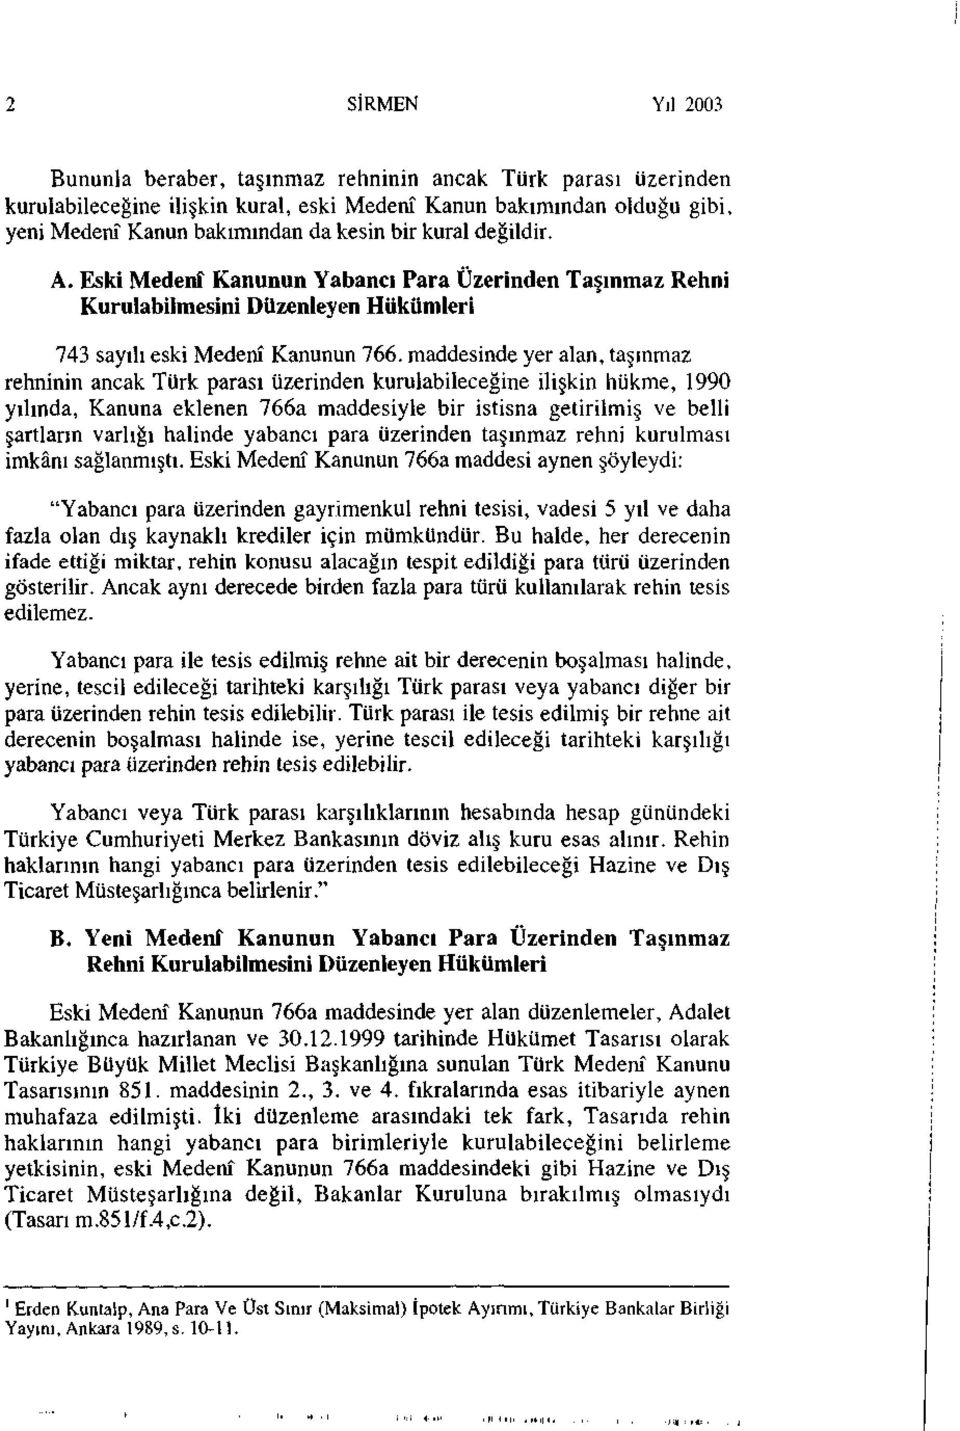 maddesinde yer alan, taşınmaz rehninin ancak Türk parası üzerinden kurulabileceğine ilişkin hükme, 1990 yılında, Kanuna eklenen 766a maddesiyle bir istisna getirilmiş ve belli şartların varlığı